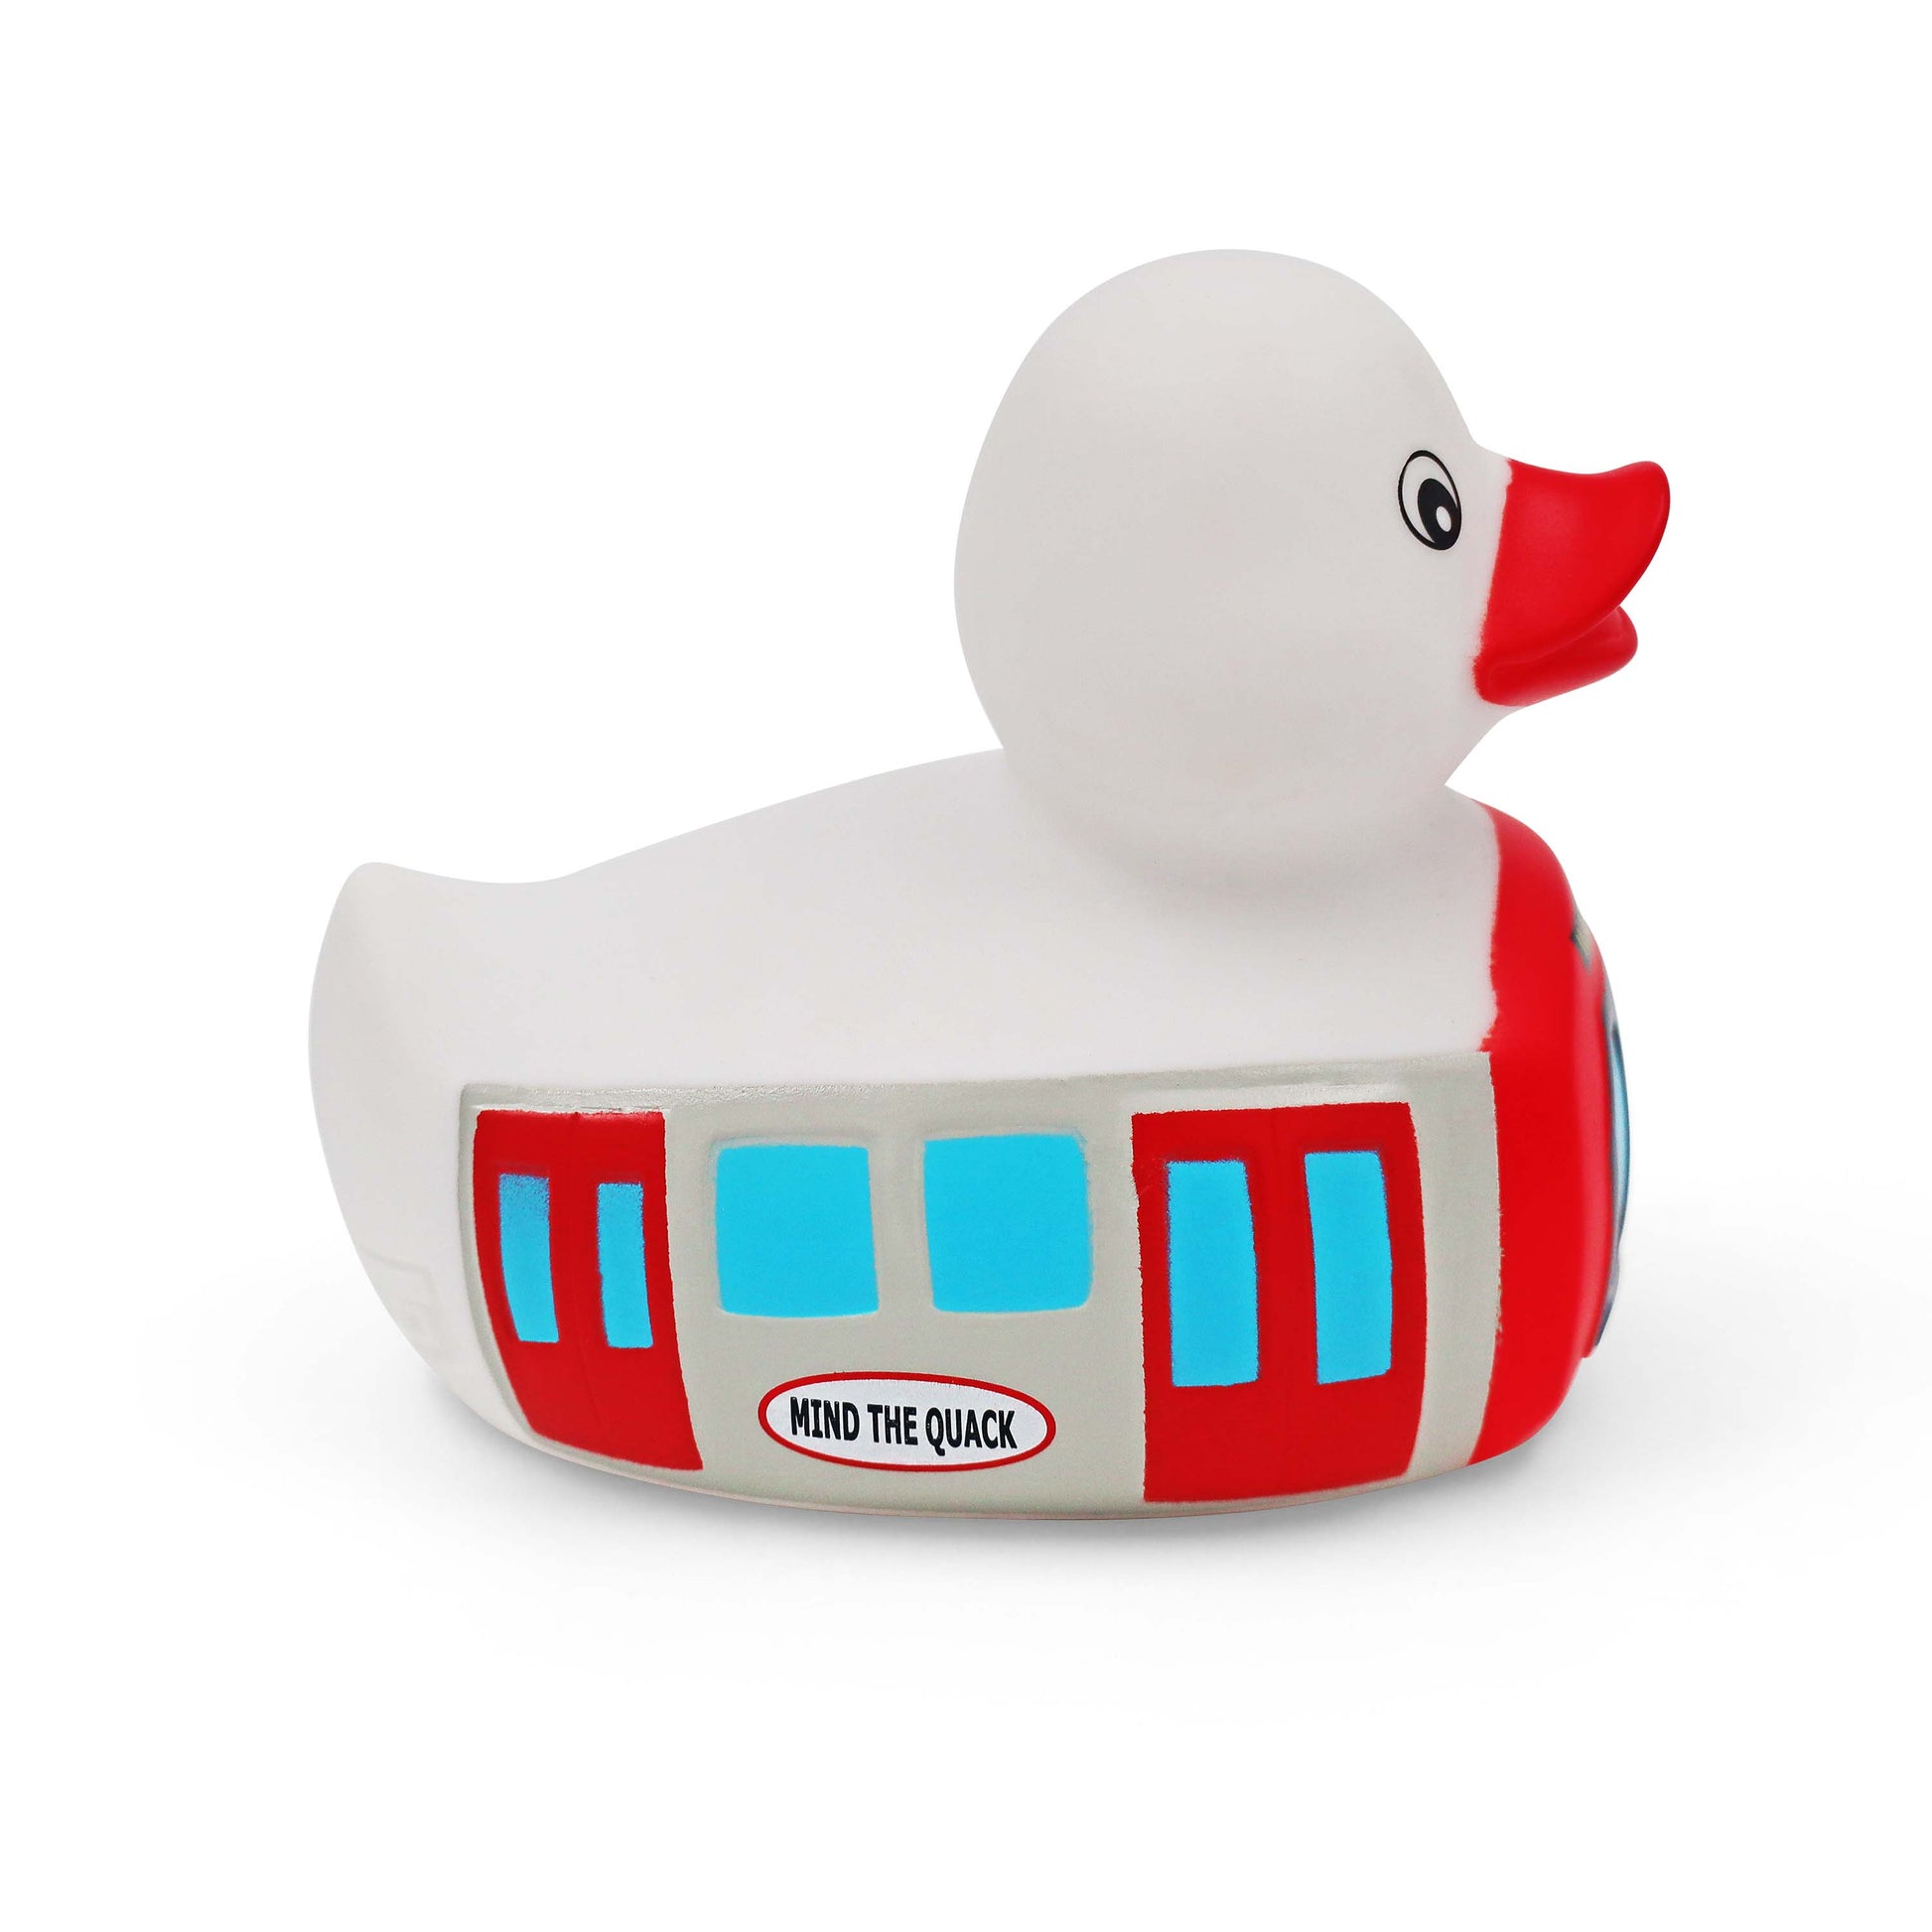 London Tube Train Rubber Duck - London Tube Train duck Souvenir